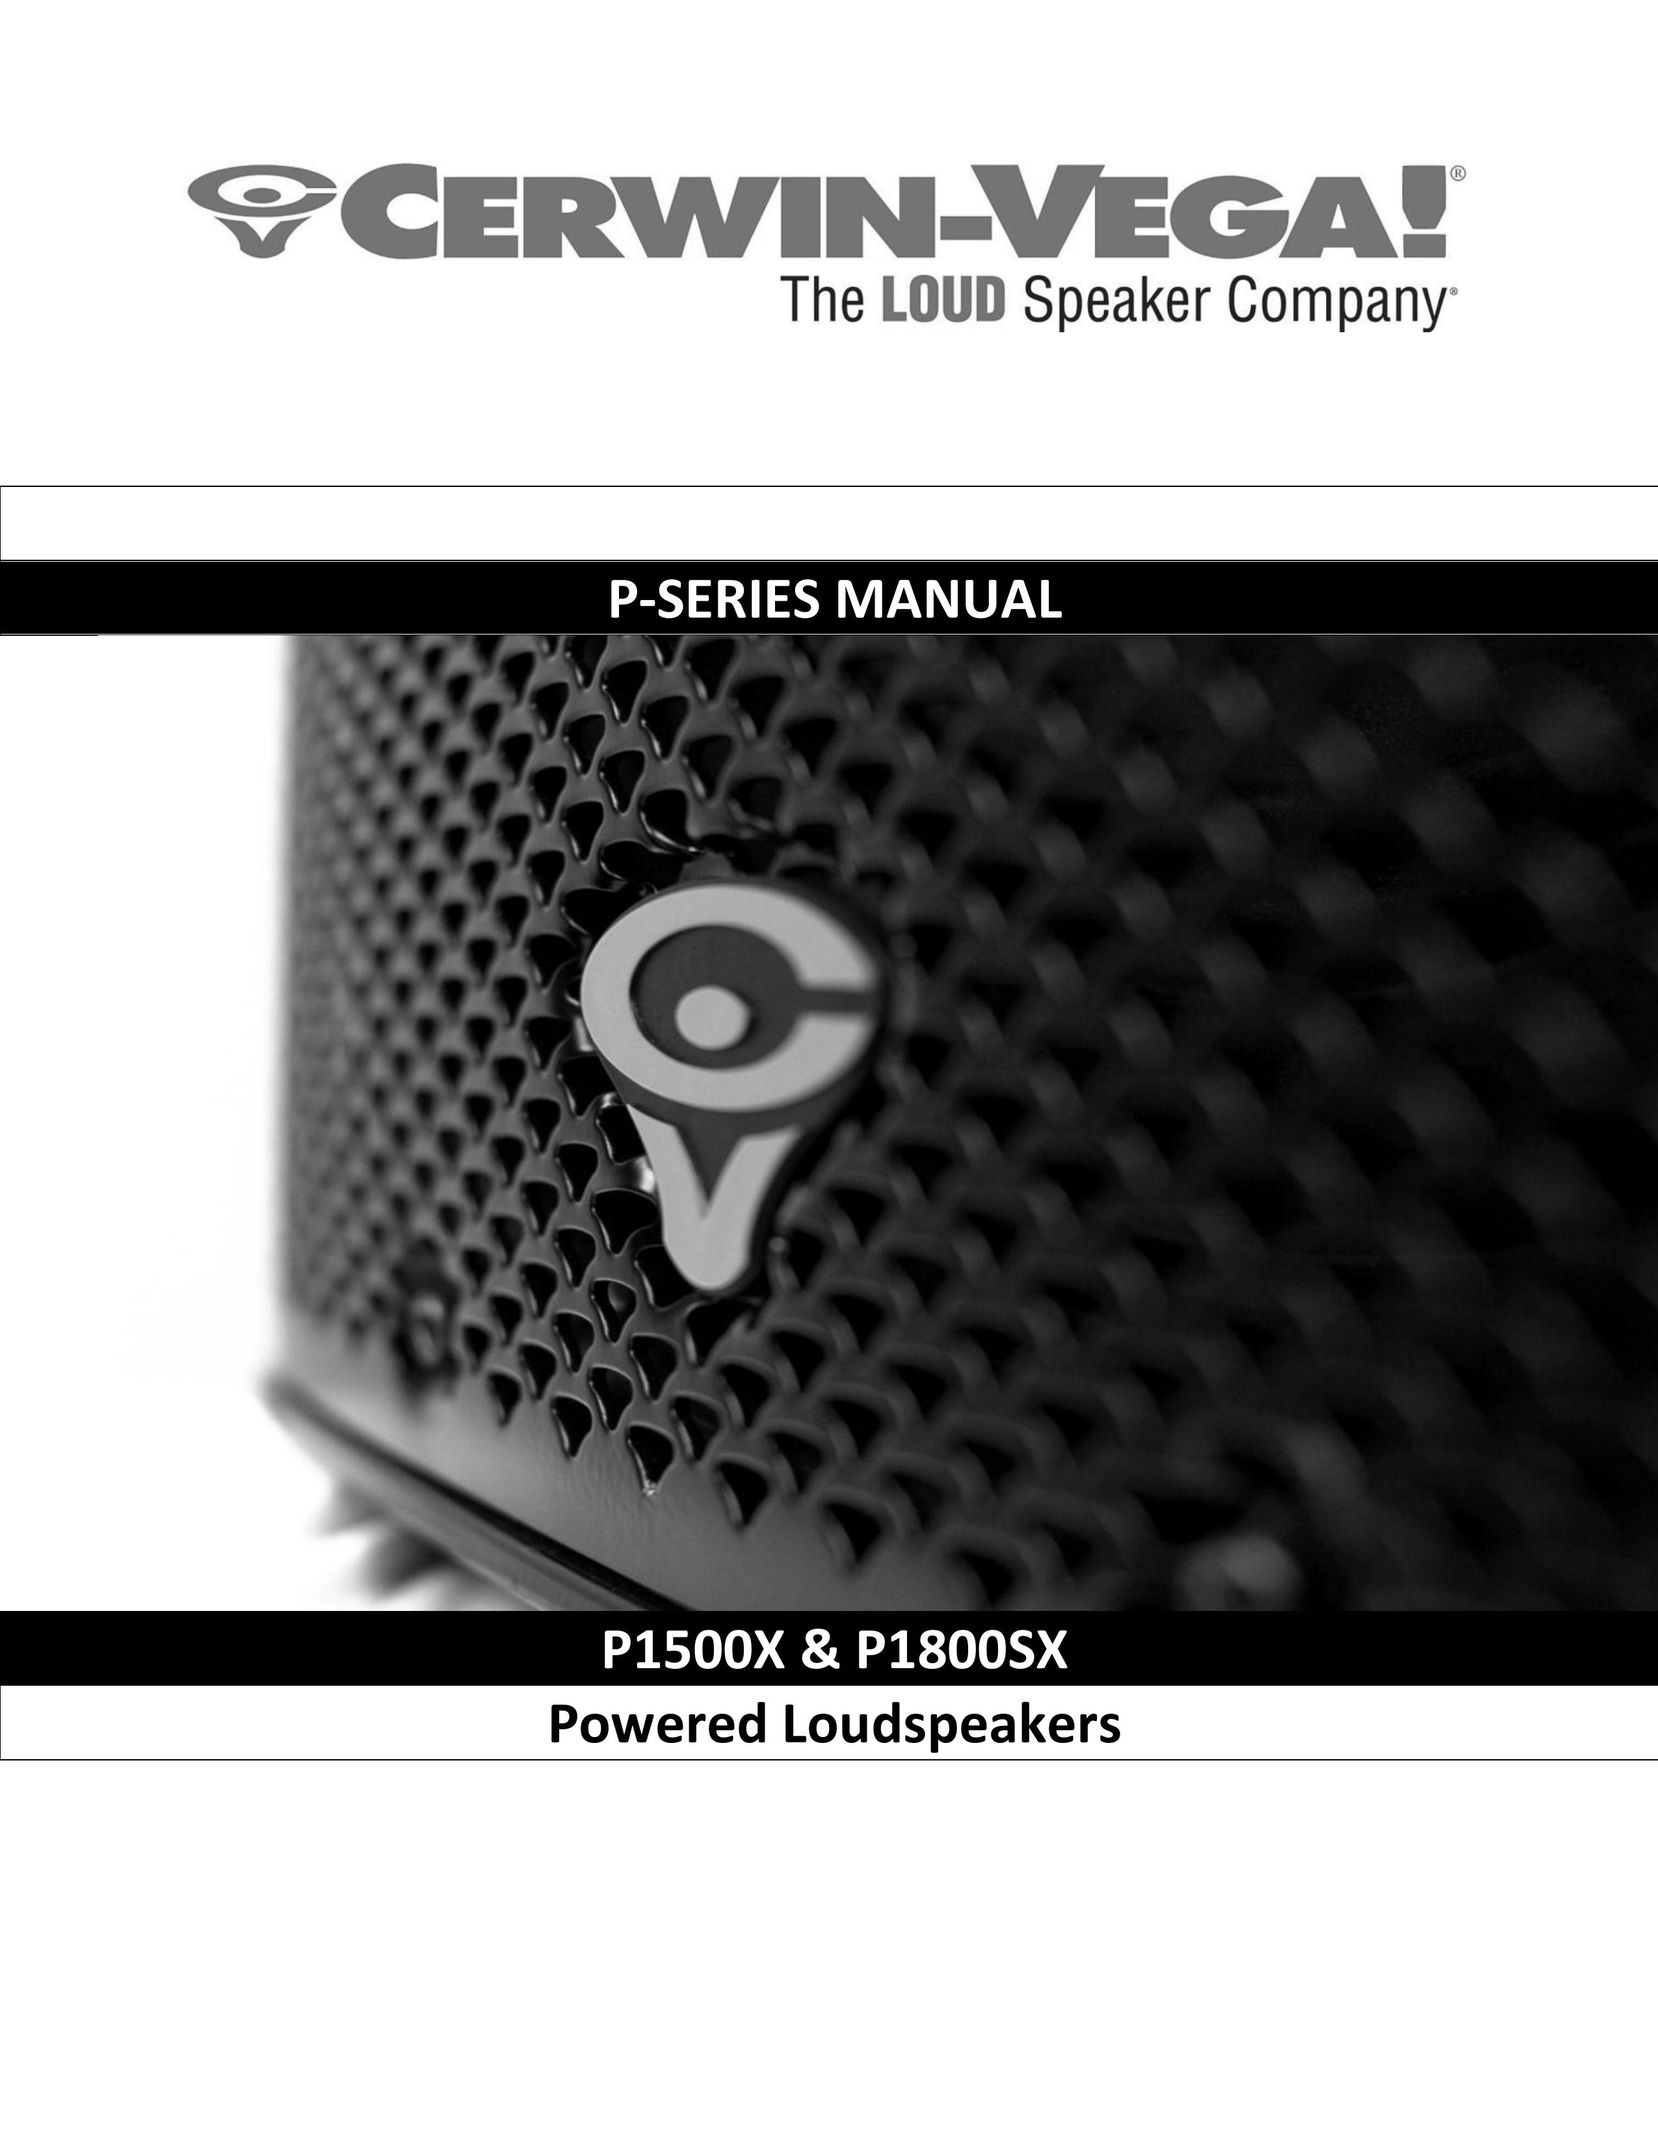 Cerwin-Vega P1800SX Speaker User Manual